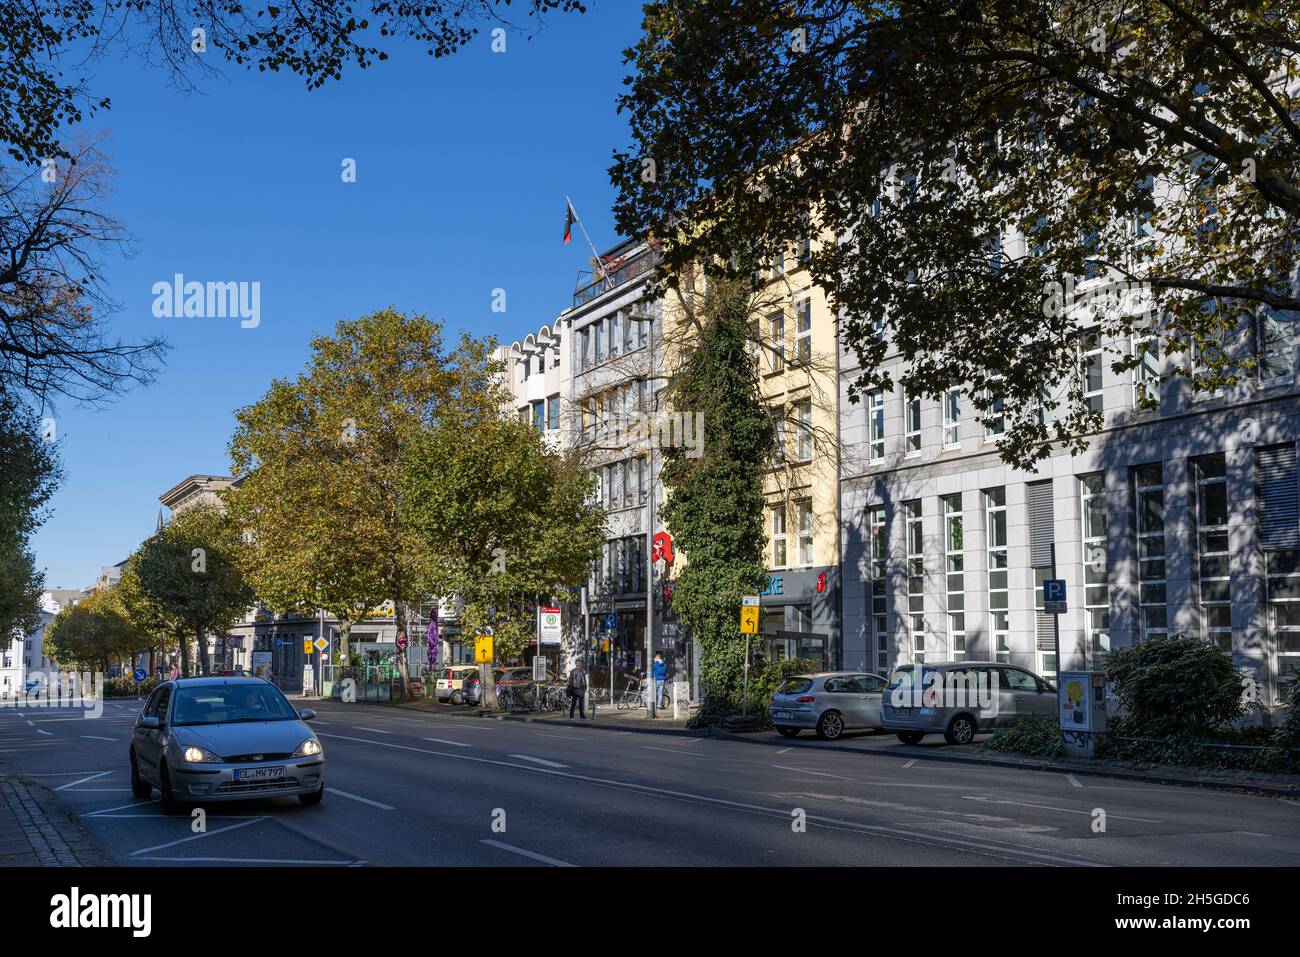 Strade strette nella città vecchia di Aachen con persone occasionali a piedi Foto Stock